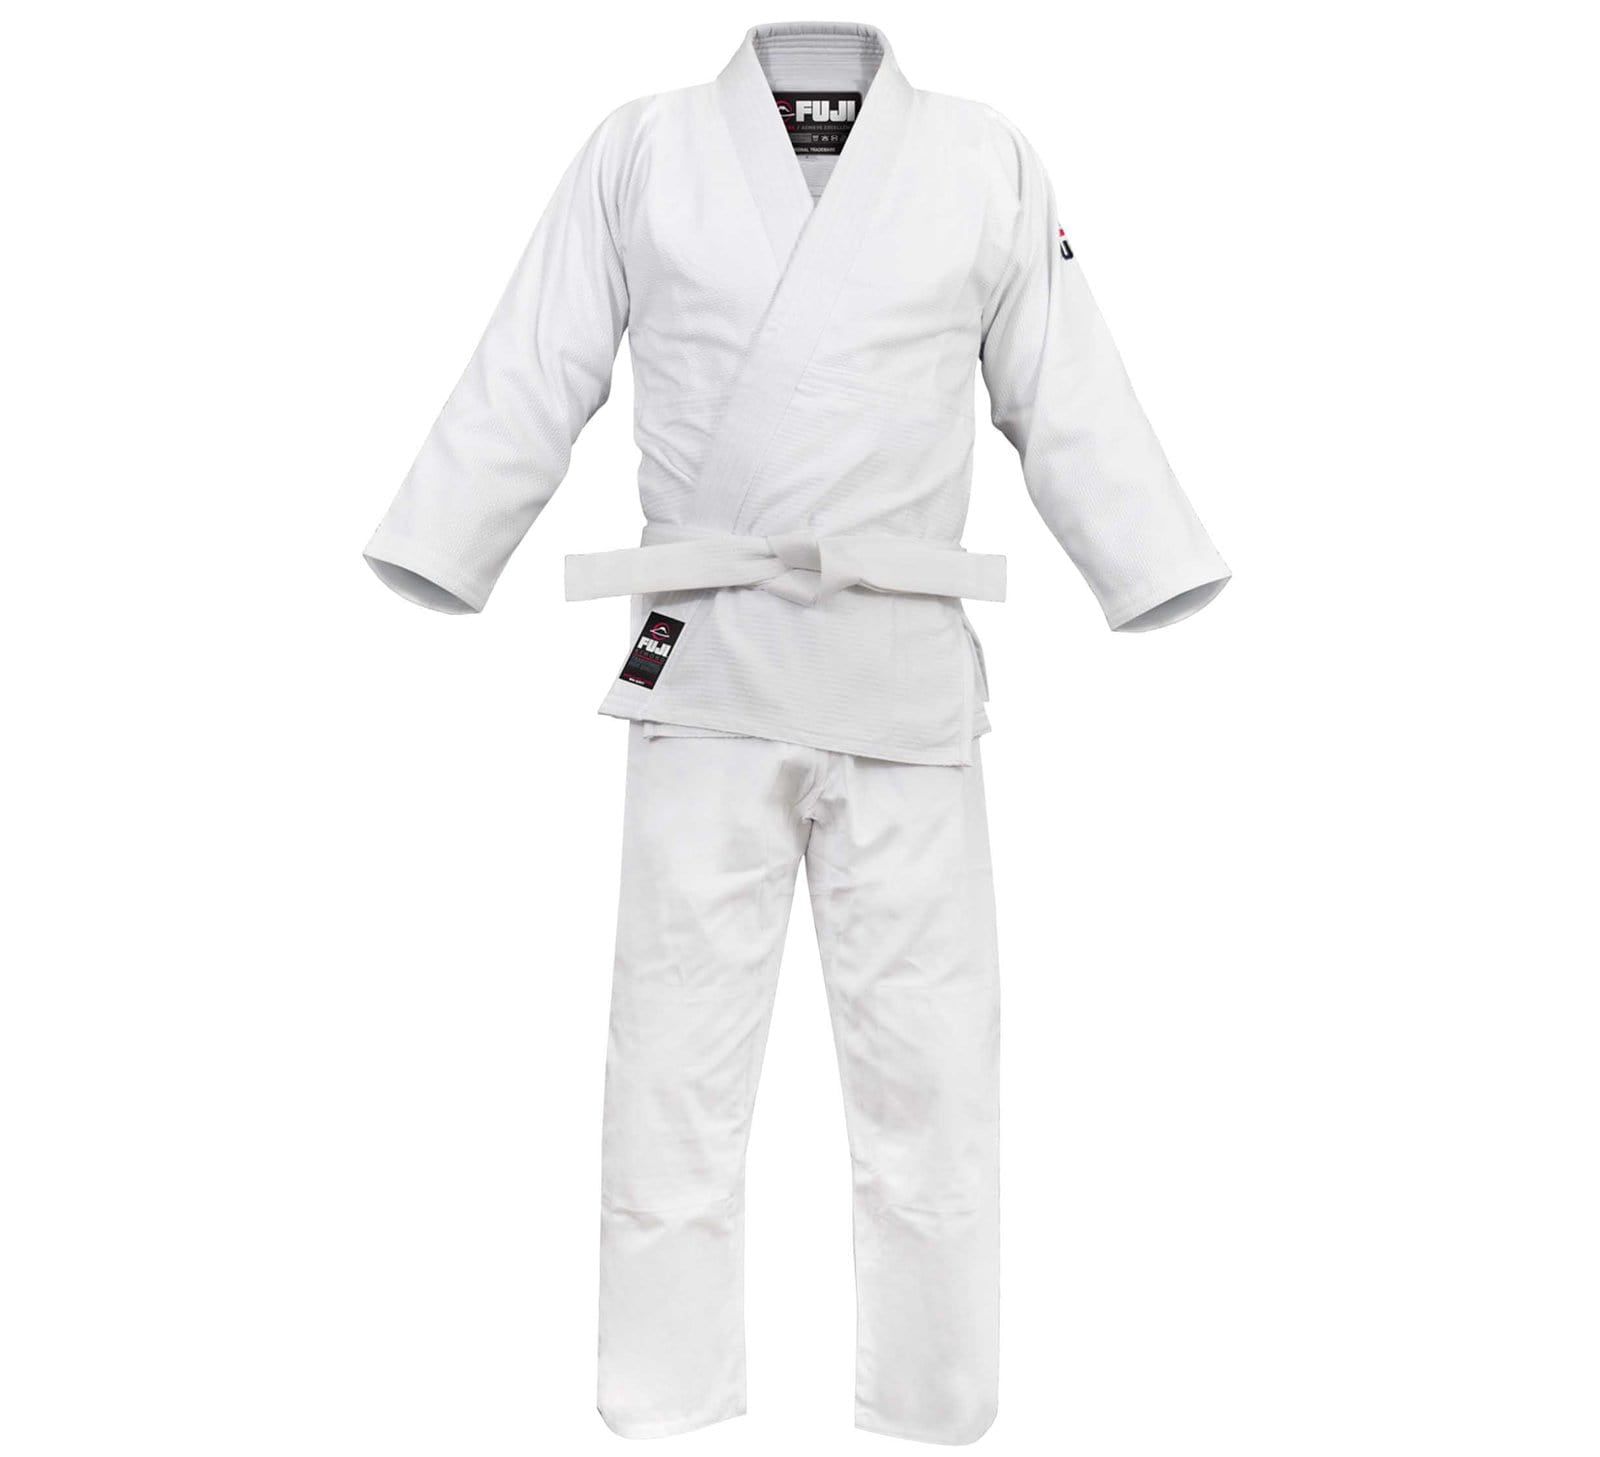 KARATE Gi Uniform Black / White Martial arts size 0000~7 Jiu Jitsu Gi Judo 